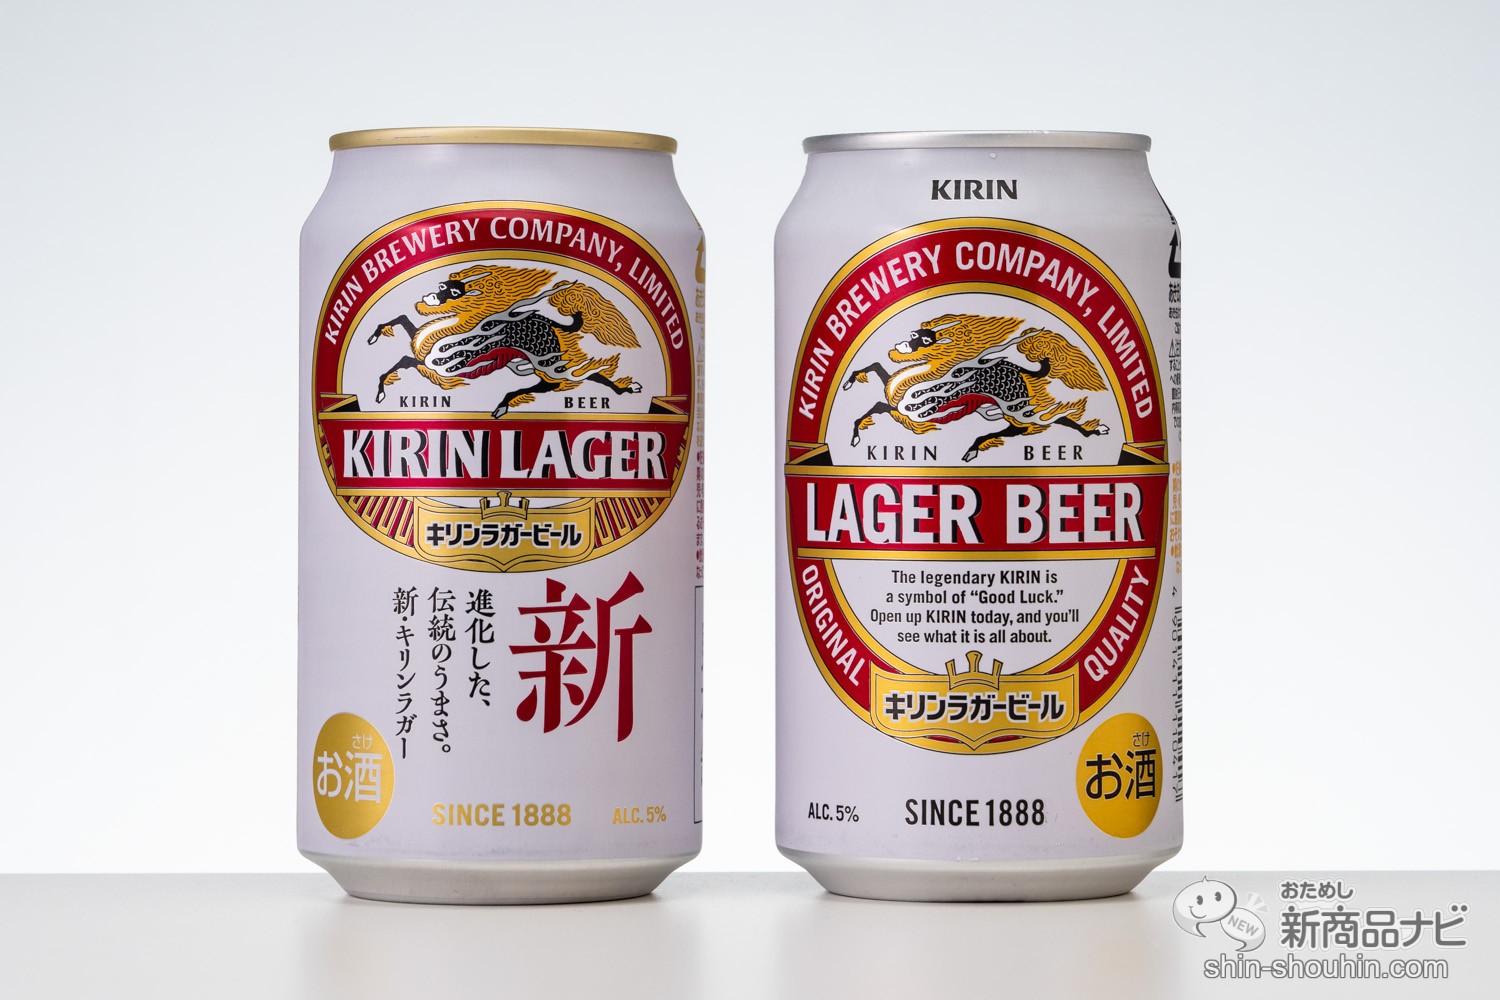 おためし新商品ナビ » Blog Archive » 【飲み比べ】10年ぶりの進化で『キリンラガービール』はどう変わった!?【ラベルの歴史付】